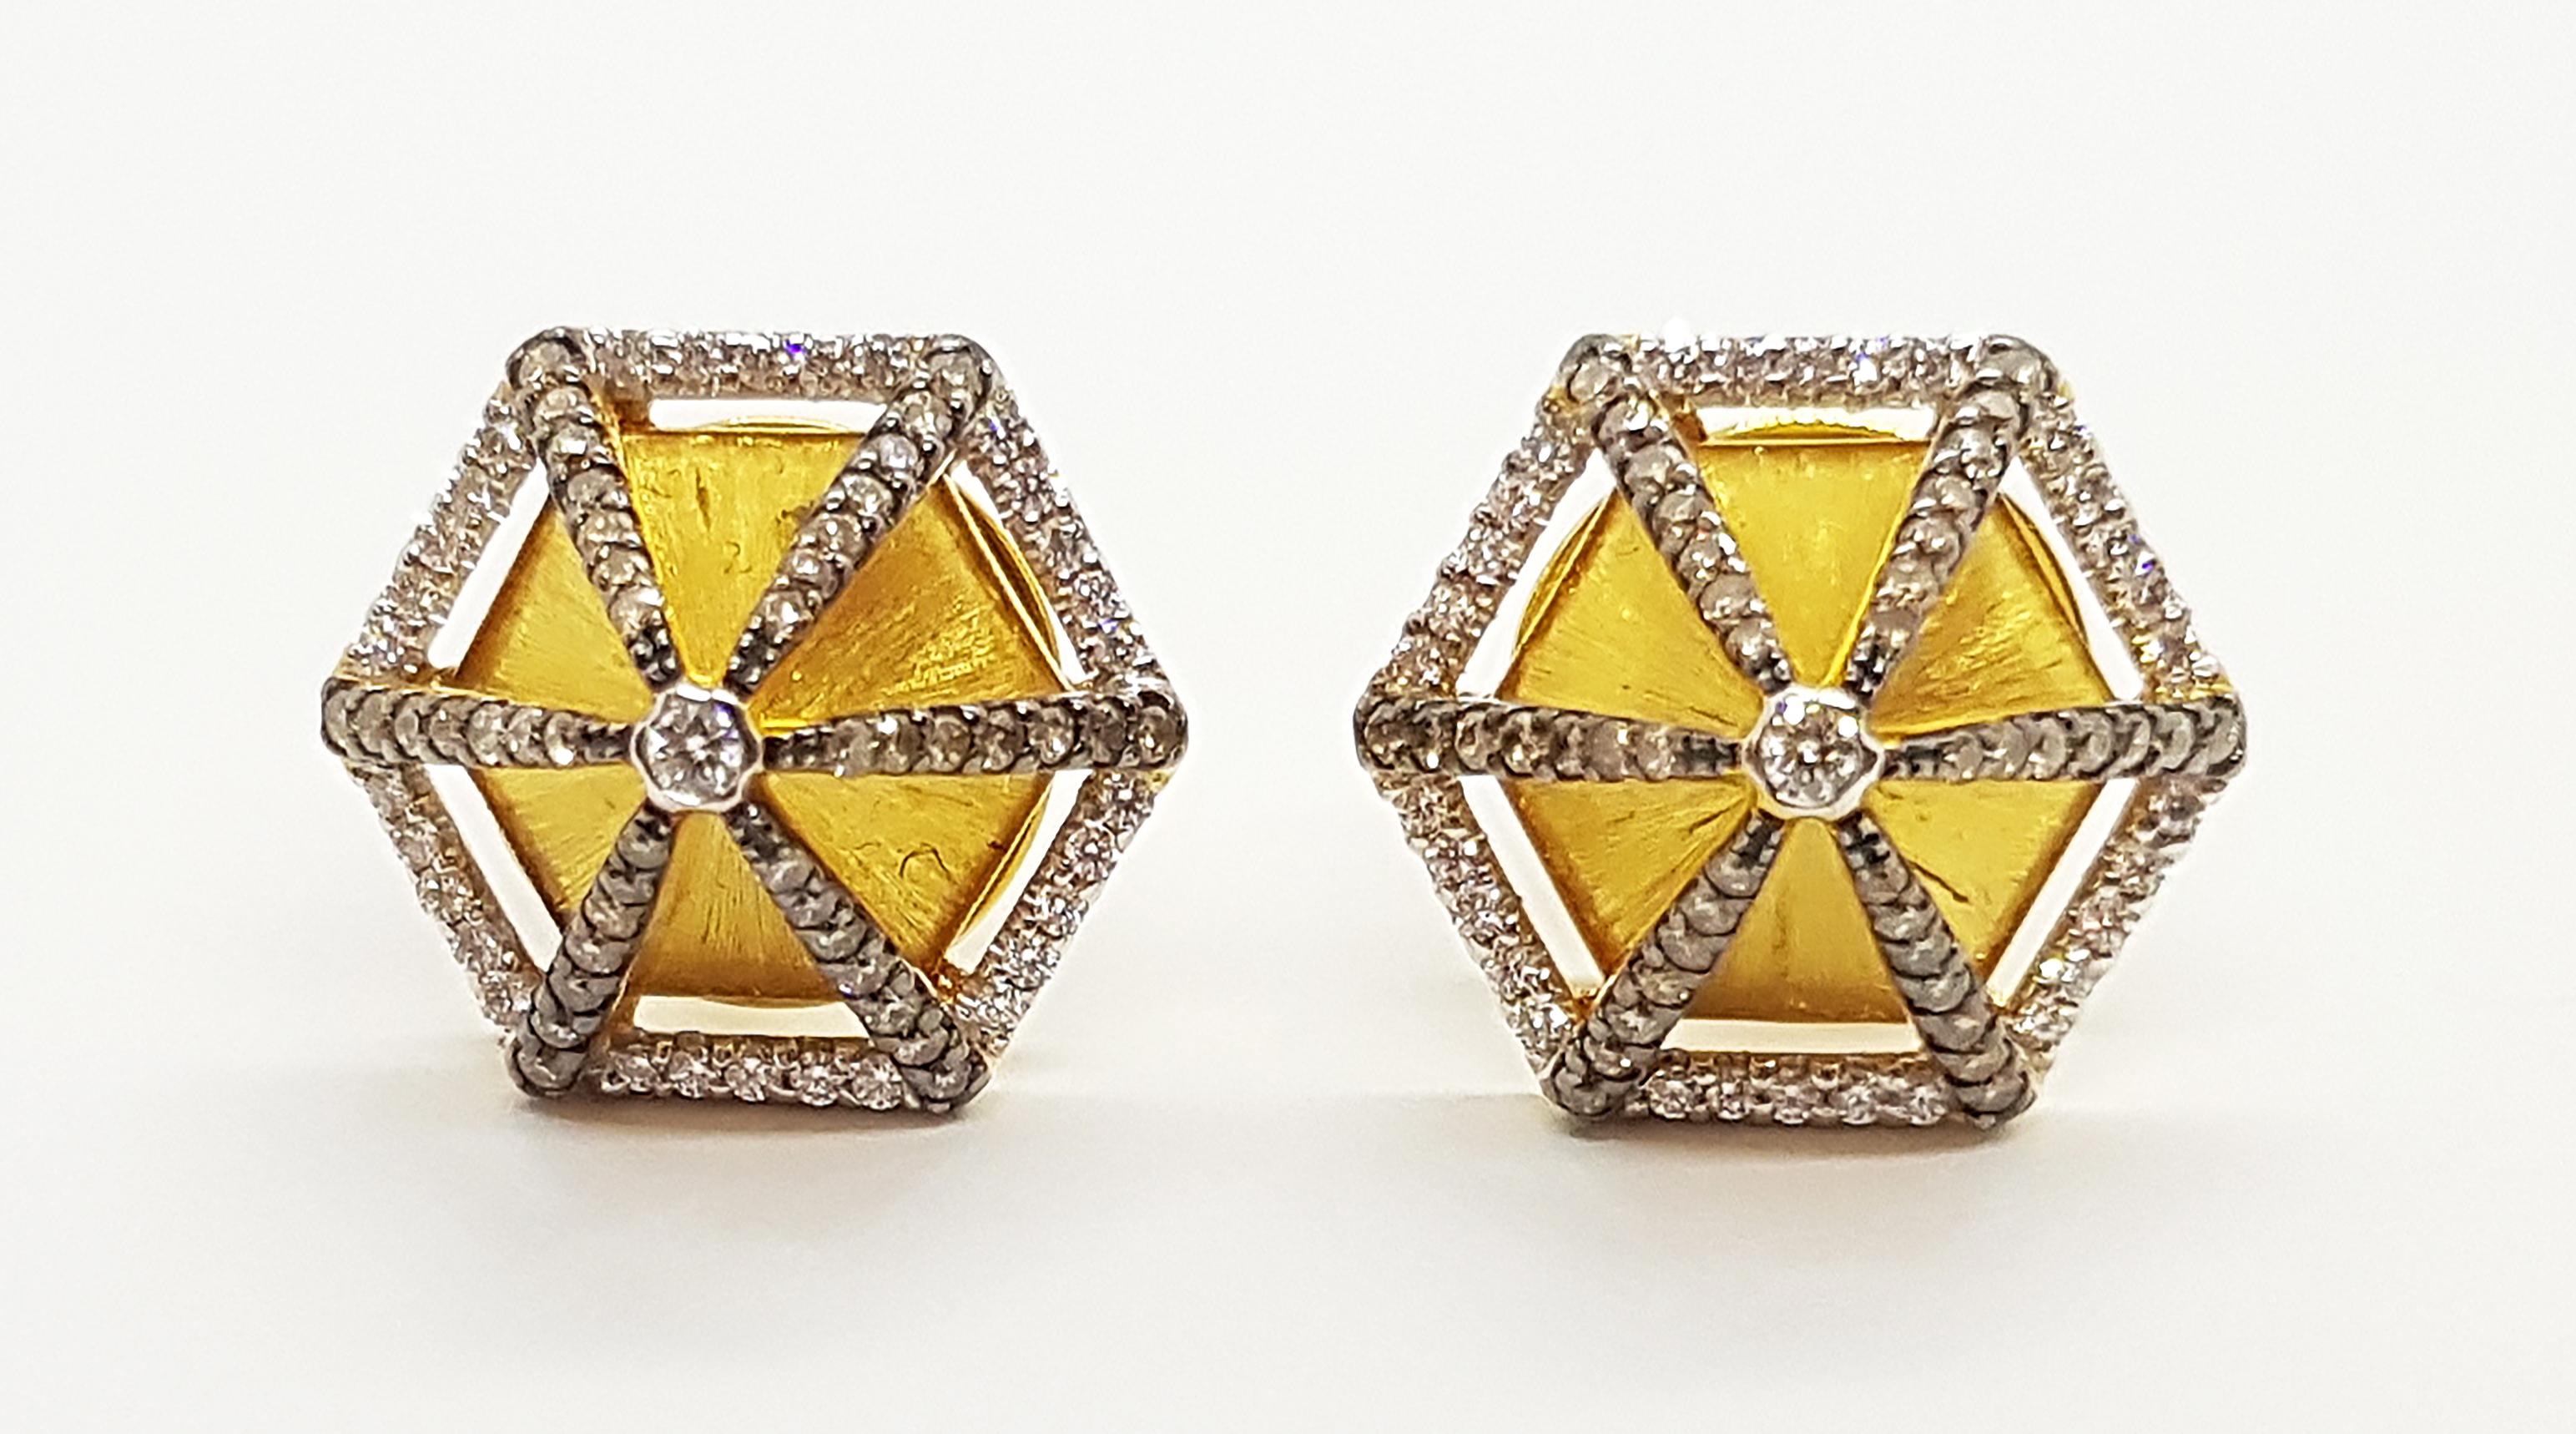 Boucles d'oreilles en or 18 carats avec diamant brun 0,44 carat et diamant 0,27 carat

Largeur :  1.6 cm 
Longueur :  1.6 cm
Poids total : 10,65 grammes

FONDÉE PAR UN COUPLE PRIMÉ, NUTTAPON (KENNY) & SHAR-LINN, KAVANT & SHARART EST UNE MARQUE DE